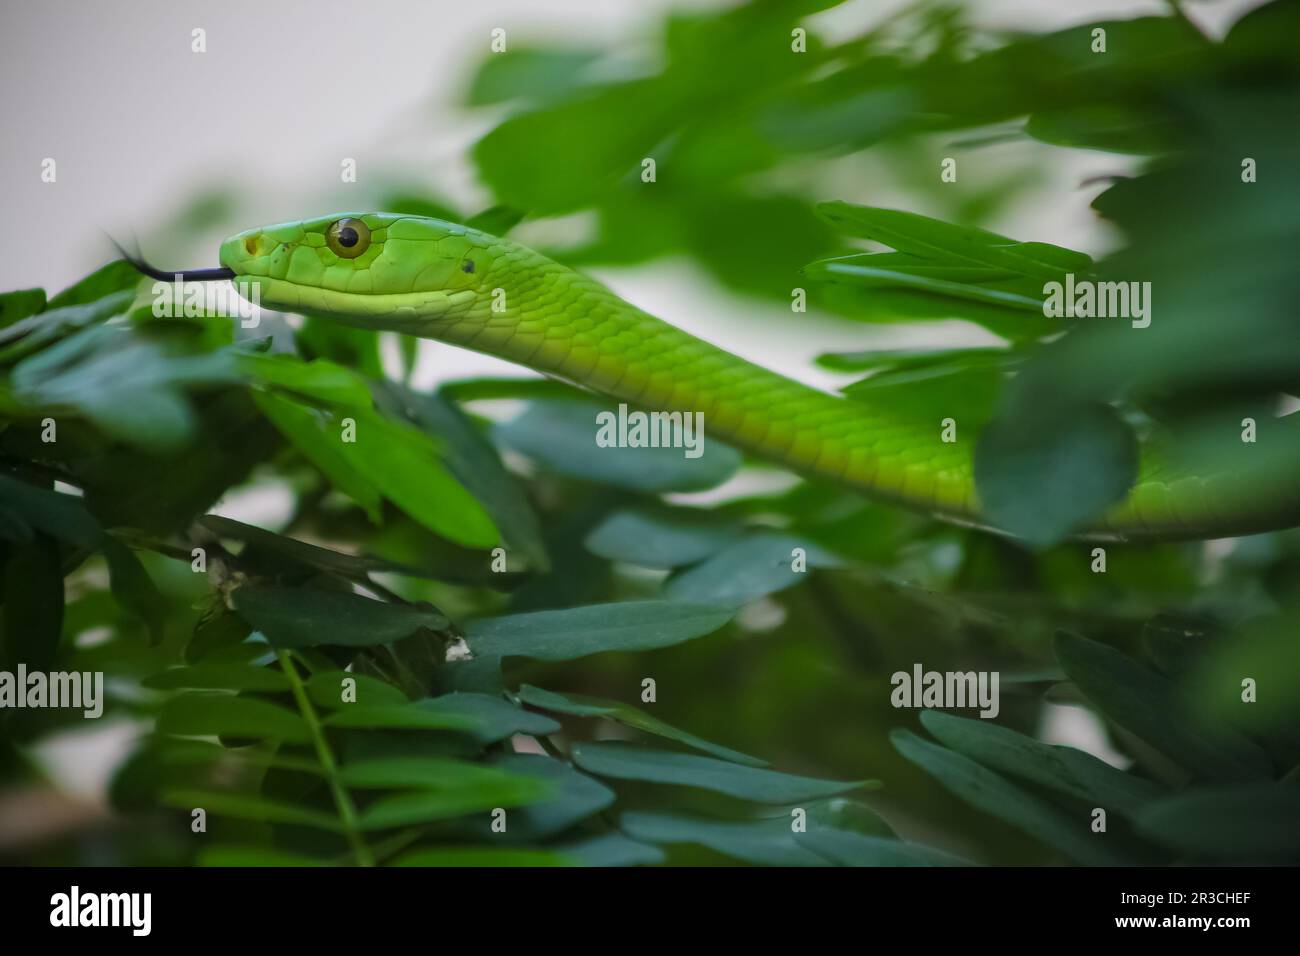 Venomous Green Mamba Tree Snake Stock Photo